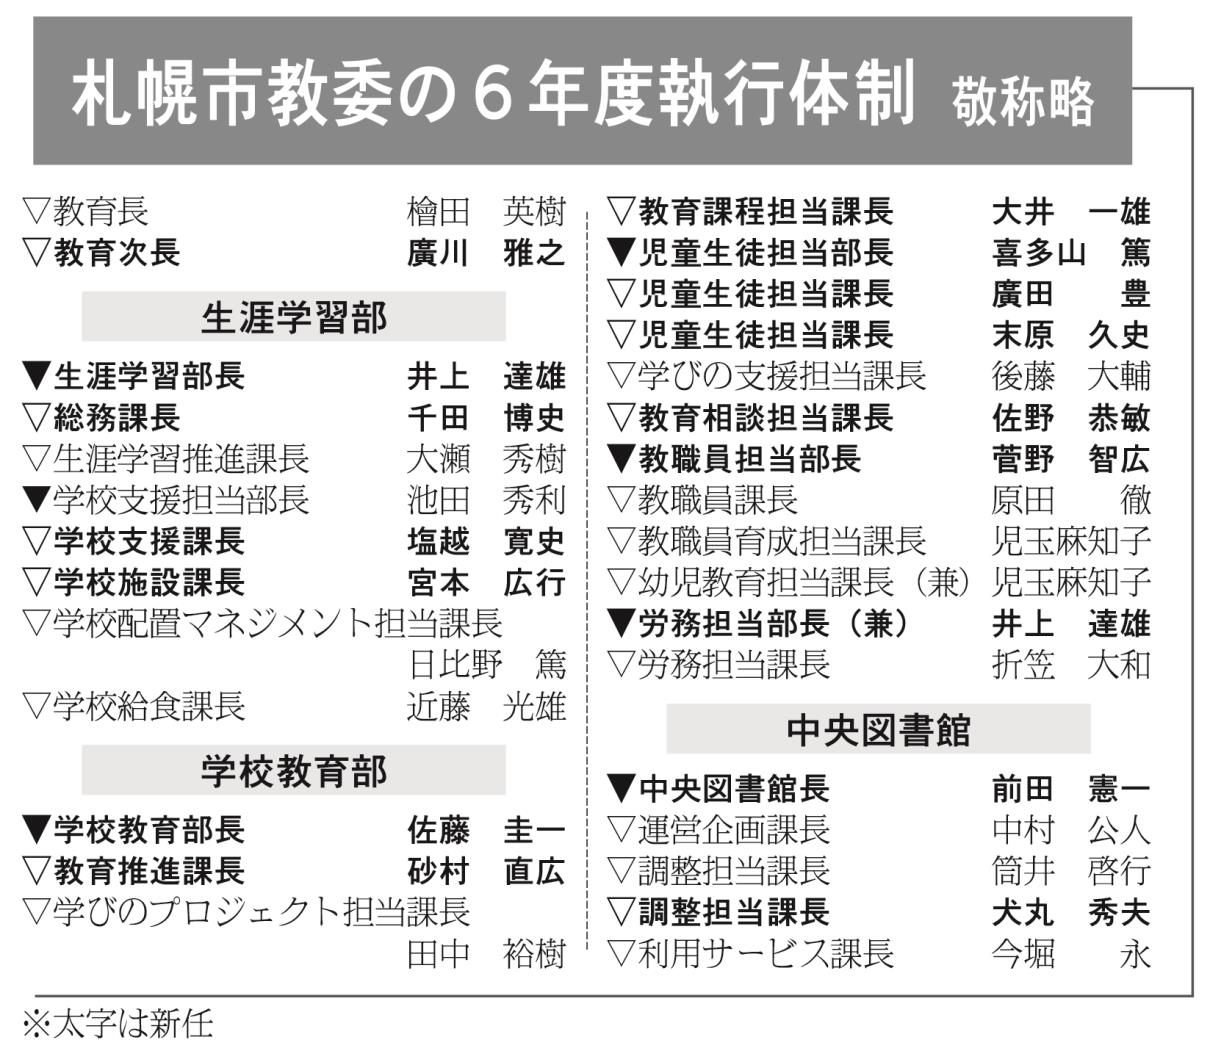 １札幌市教委の６年度執行体制